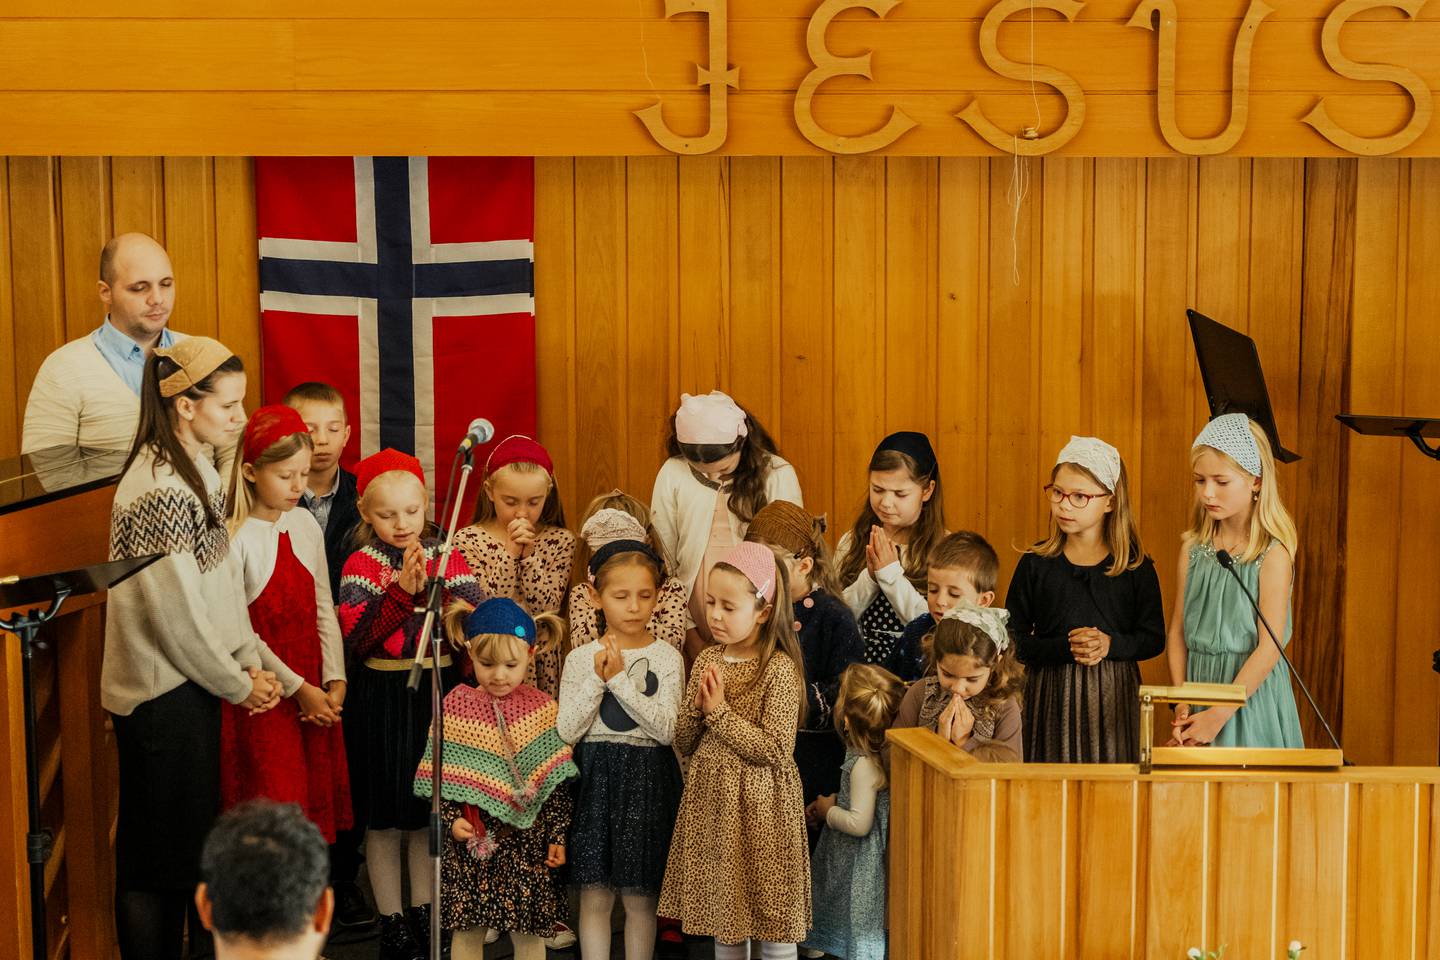 SØNDAGSSKOLE: De fleste barna er på søndagsskolen i kjelleren, men de deltar også med sang fra scenen. Sang og musikk er en viktig del av tradisjonen i menigheten.